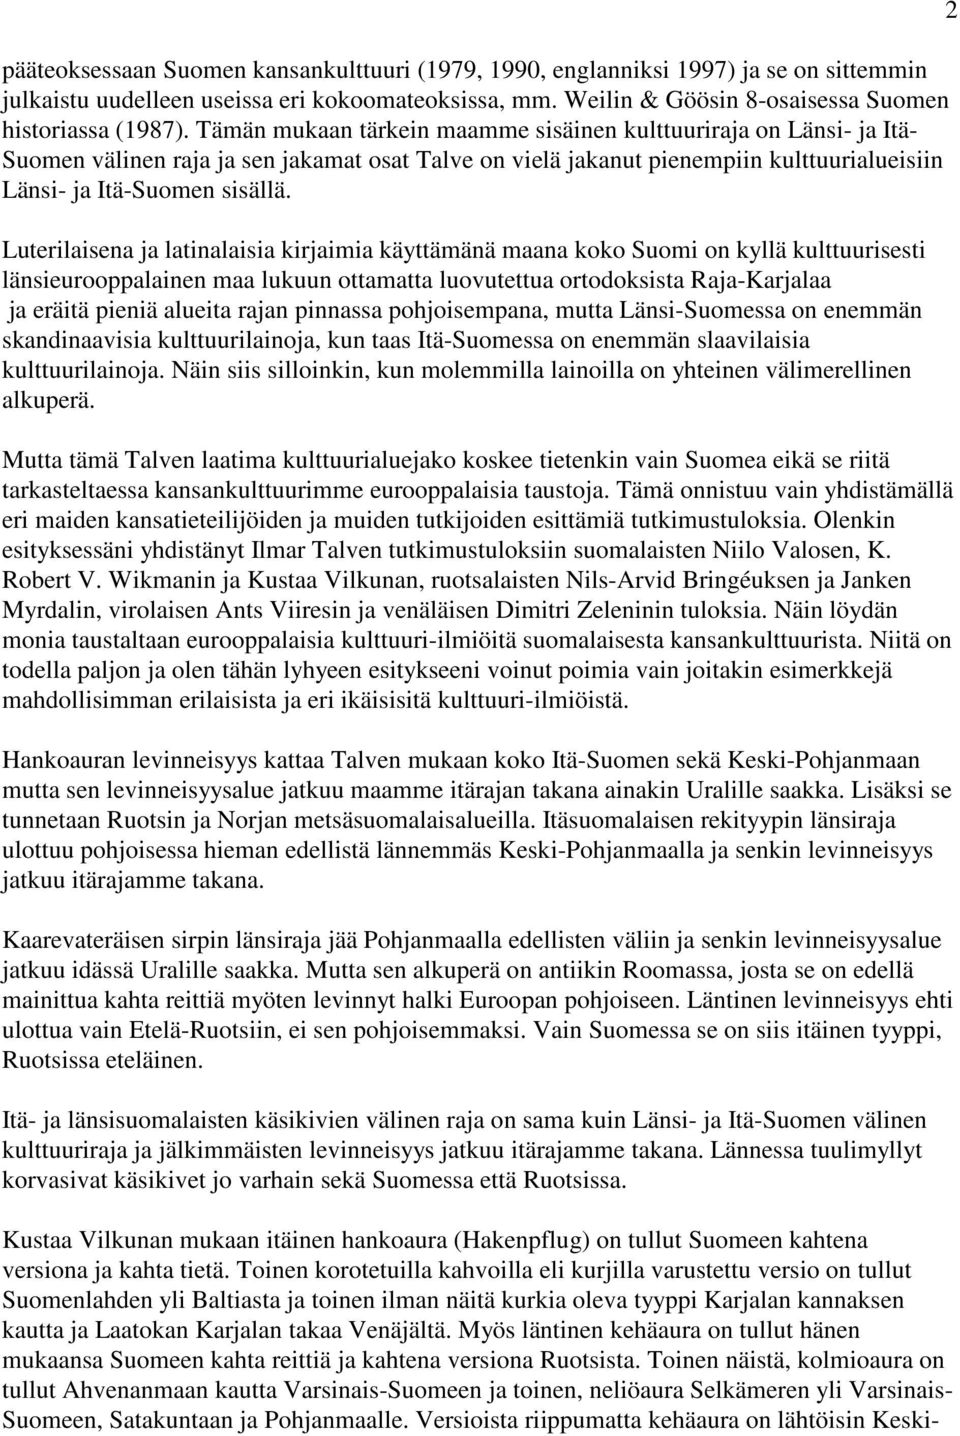 Luterilaisena ja latinalaisia kirjaimia käyttämänä maana koko Suomi on kyllä kulttuurisesti länsieurooppalainen maa lukuun ottamatta luovutettua ortodoksista Raja-Karjalaa ja eräitä pieniä alueita